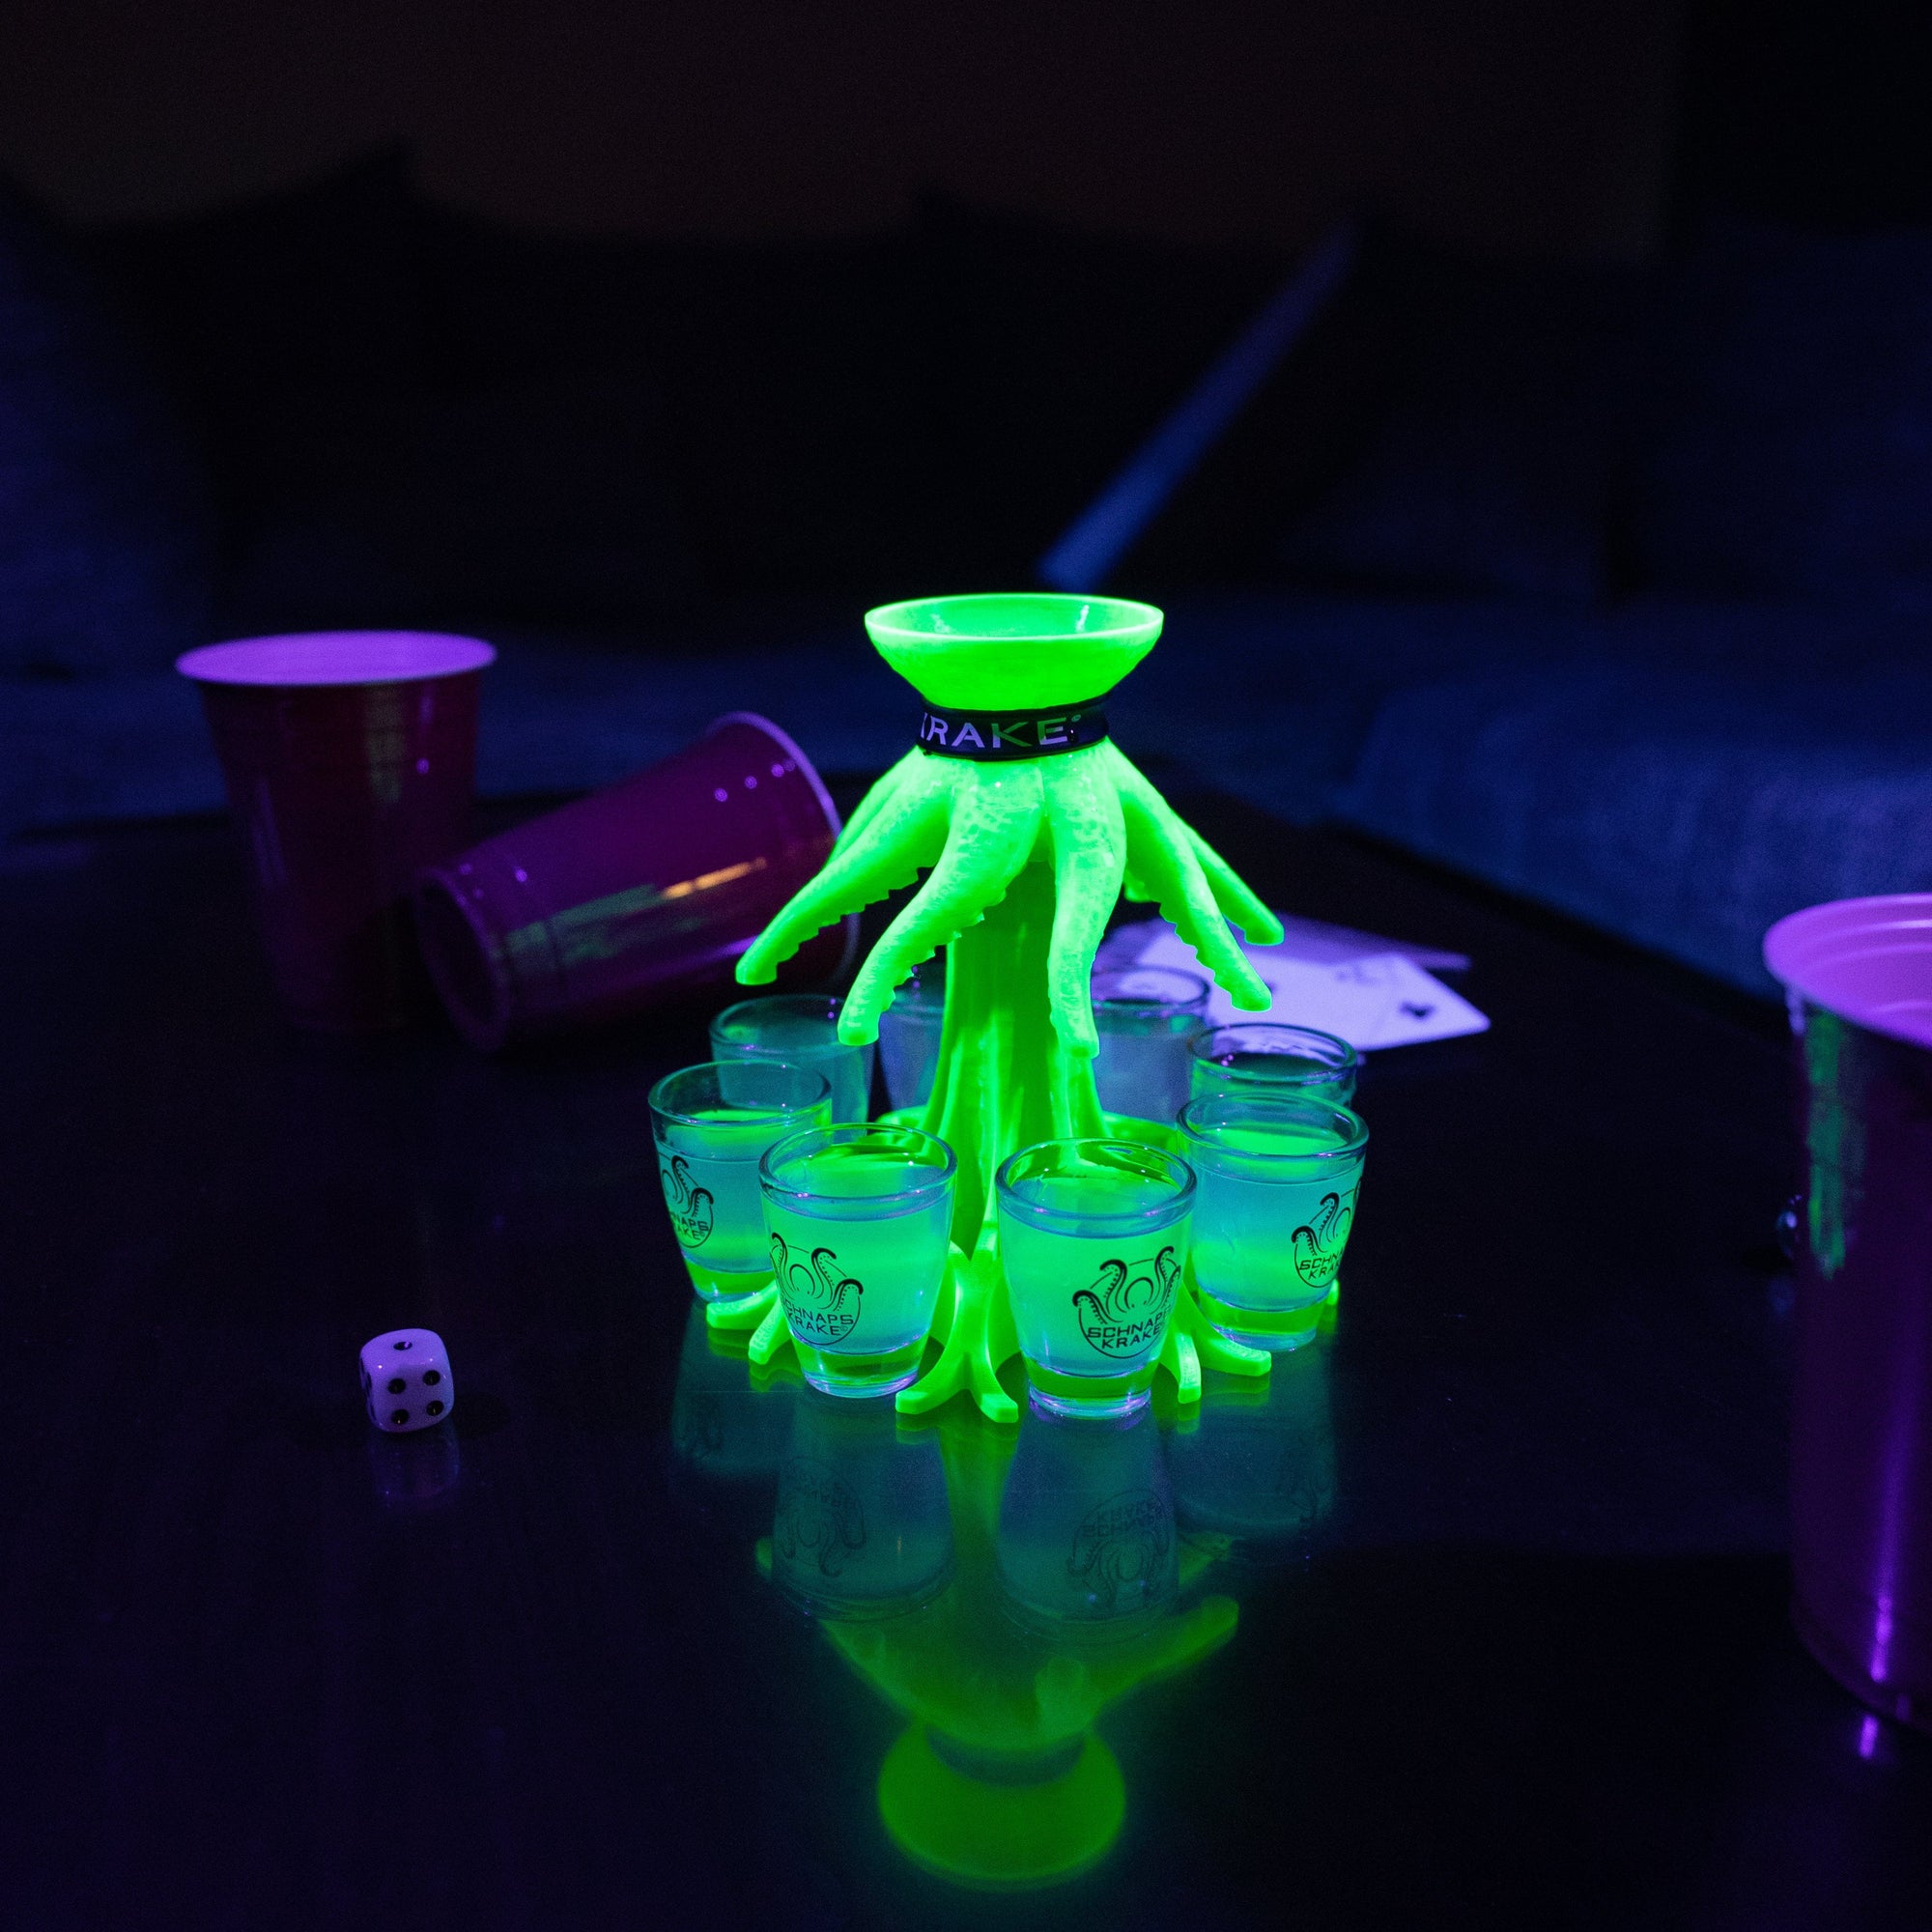 Die Schnapskrake Neon steht leuchtend auf einem Tisch